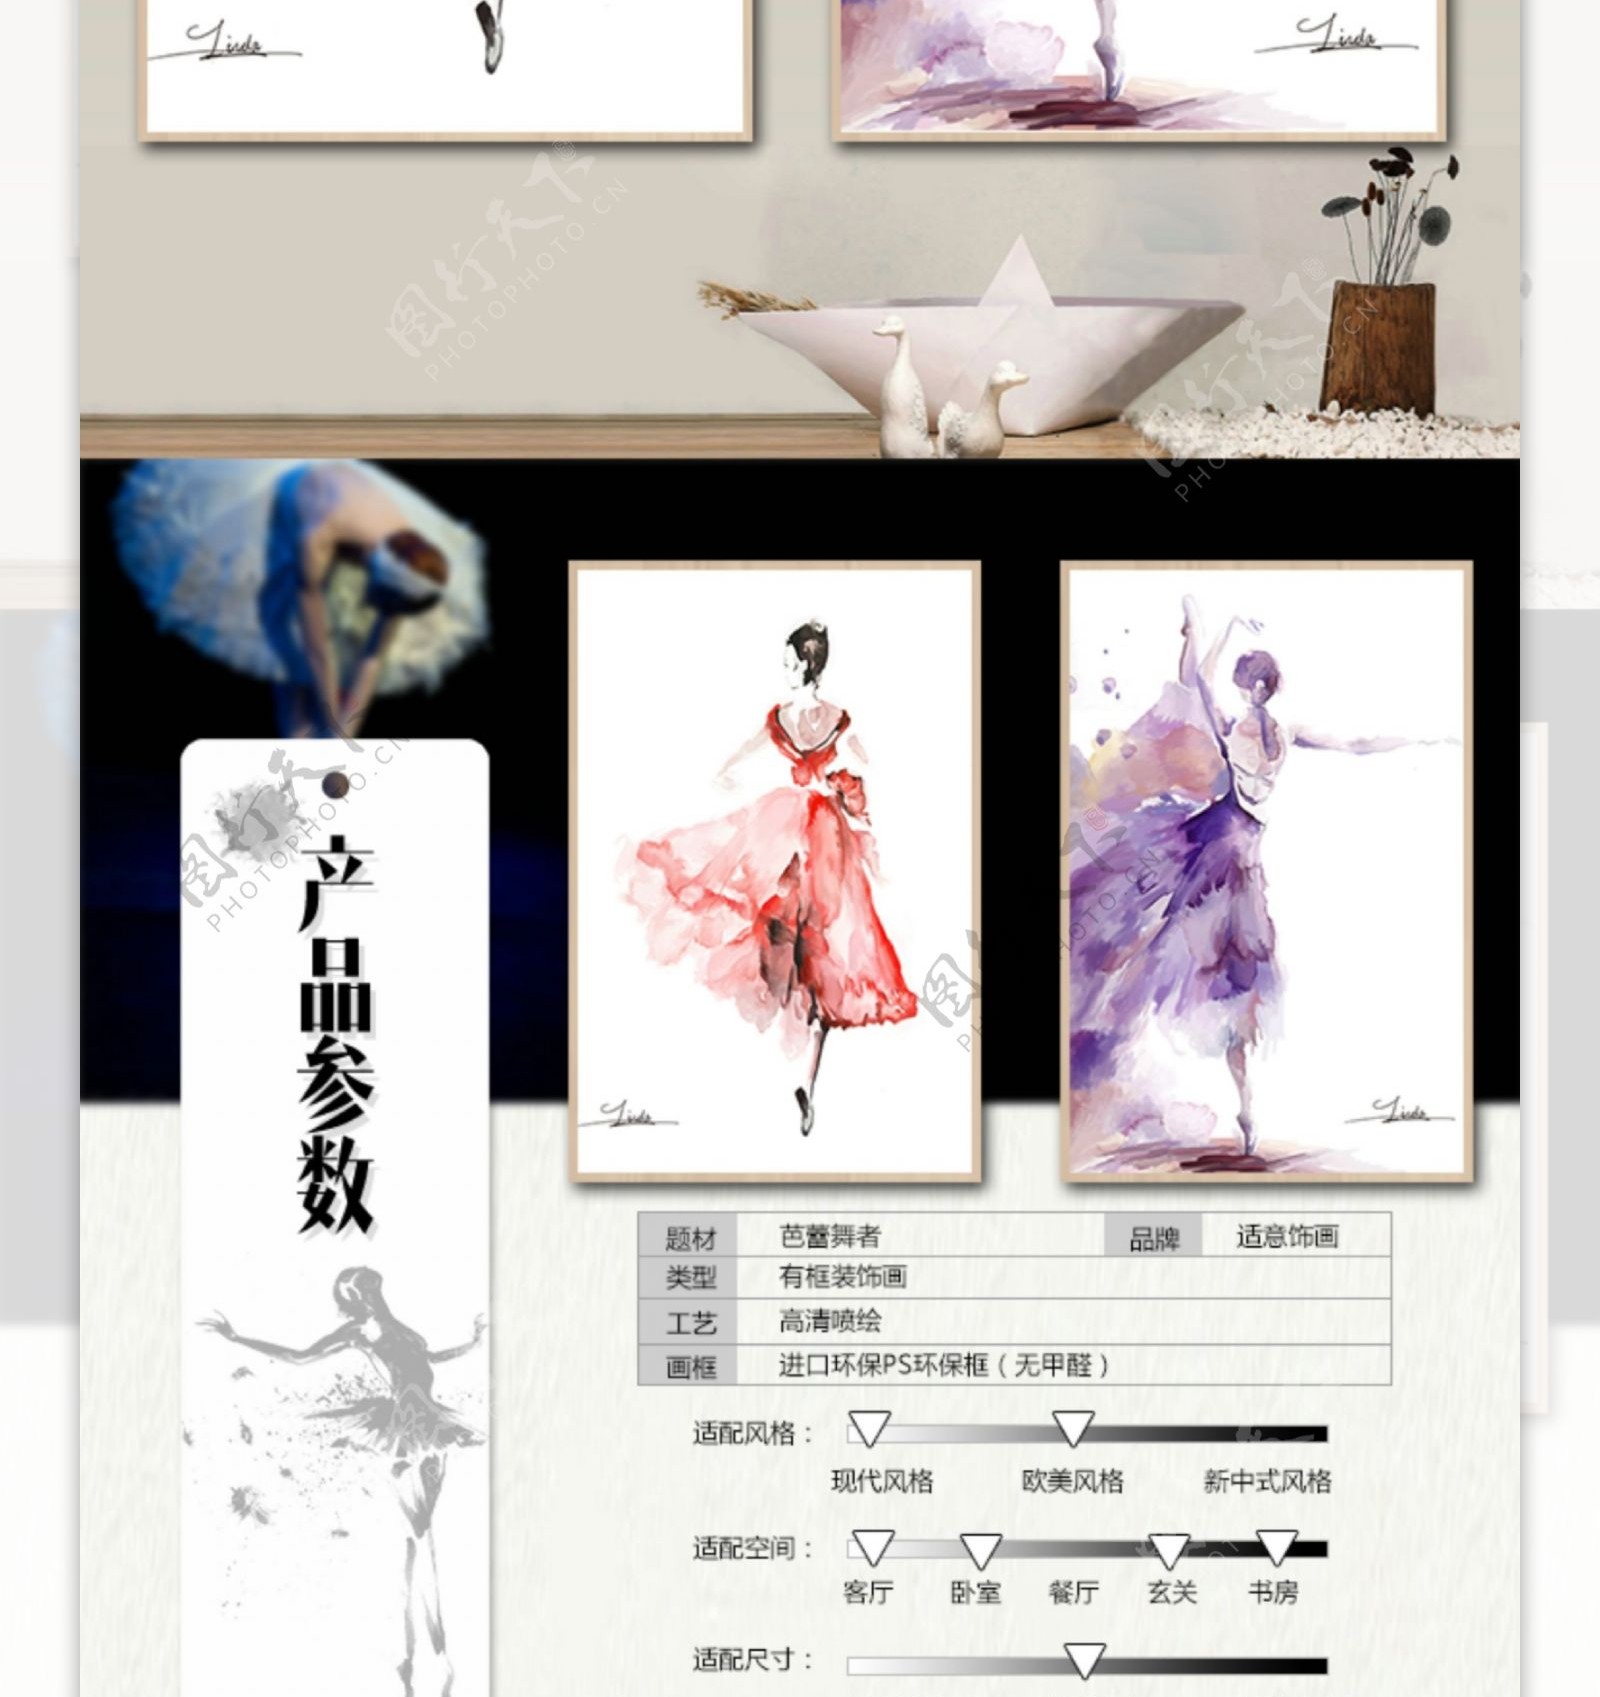 芭蕾舞紫装饰画详情页设计